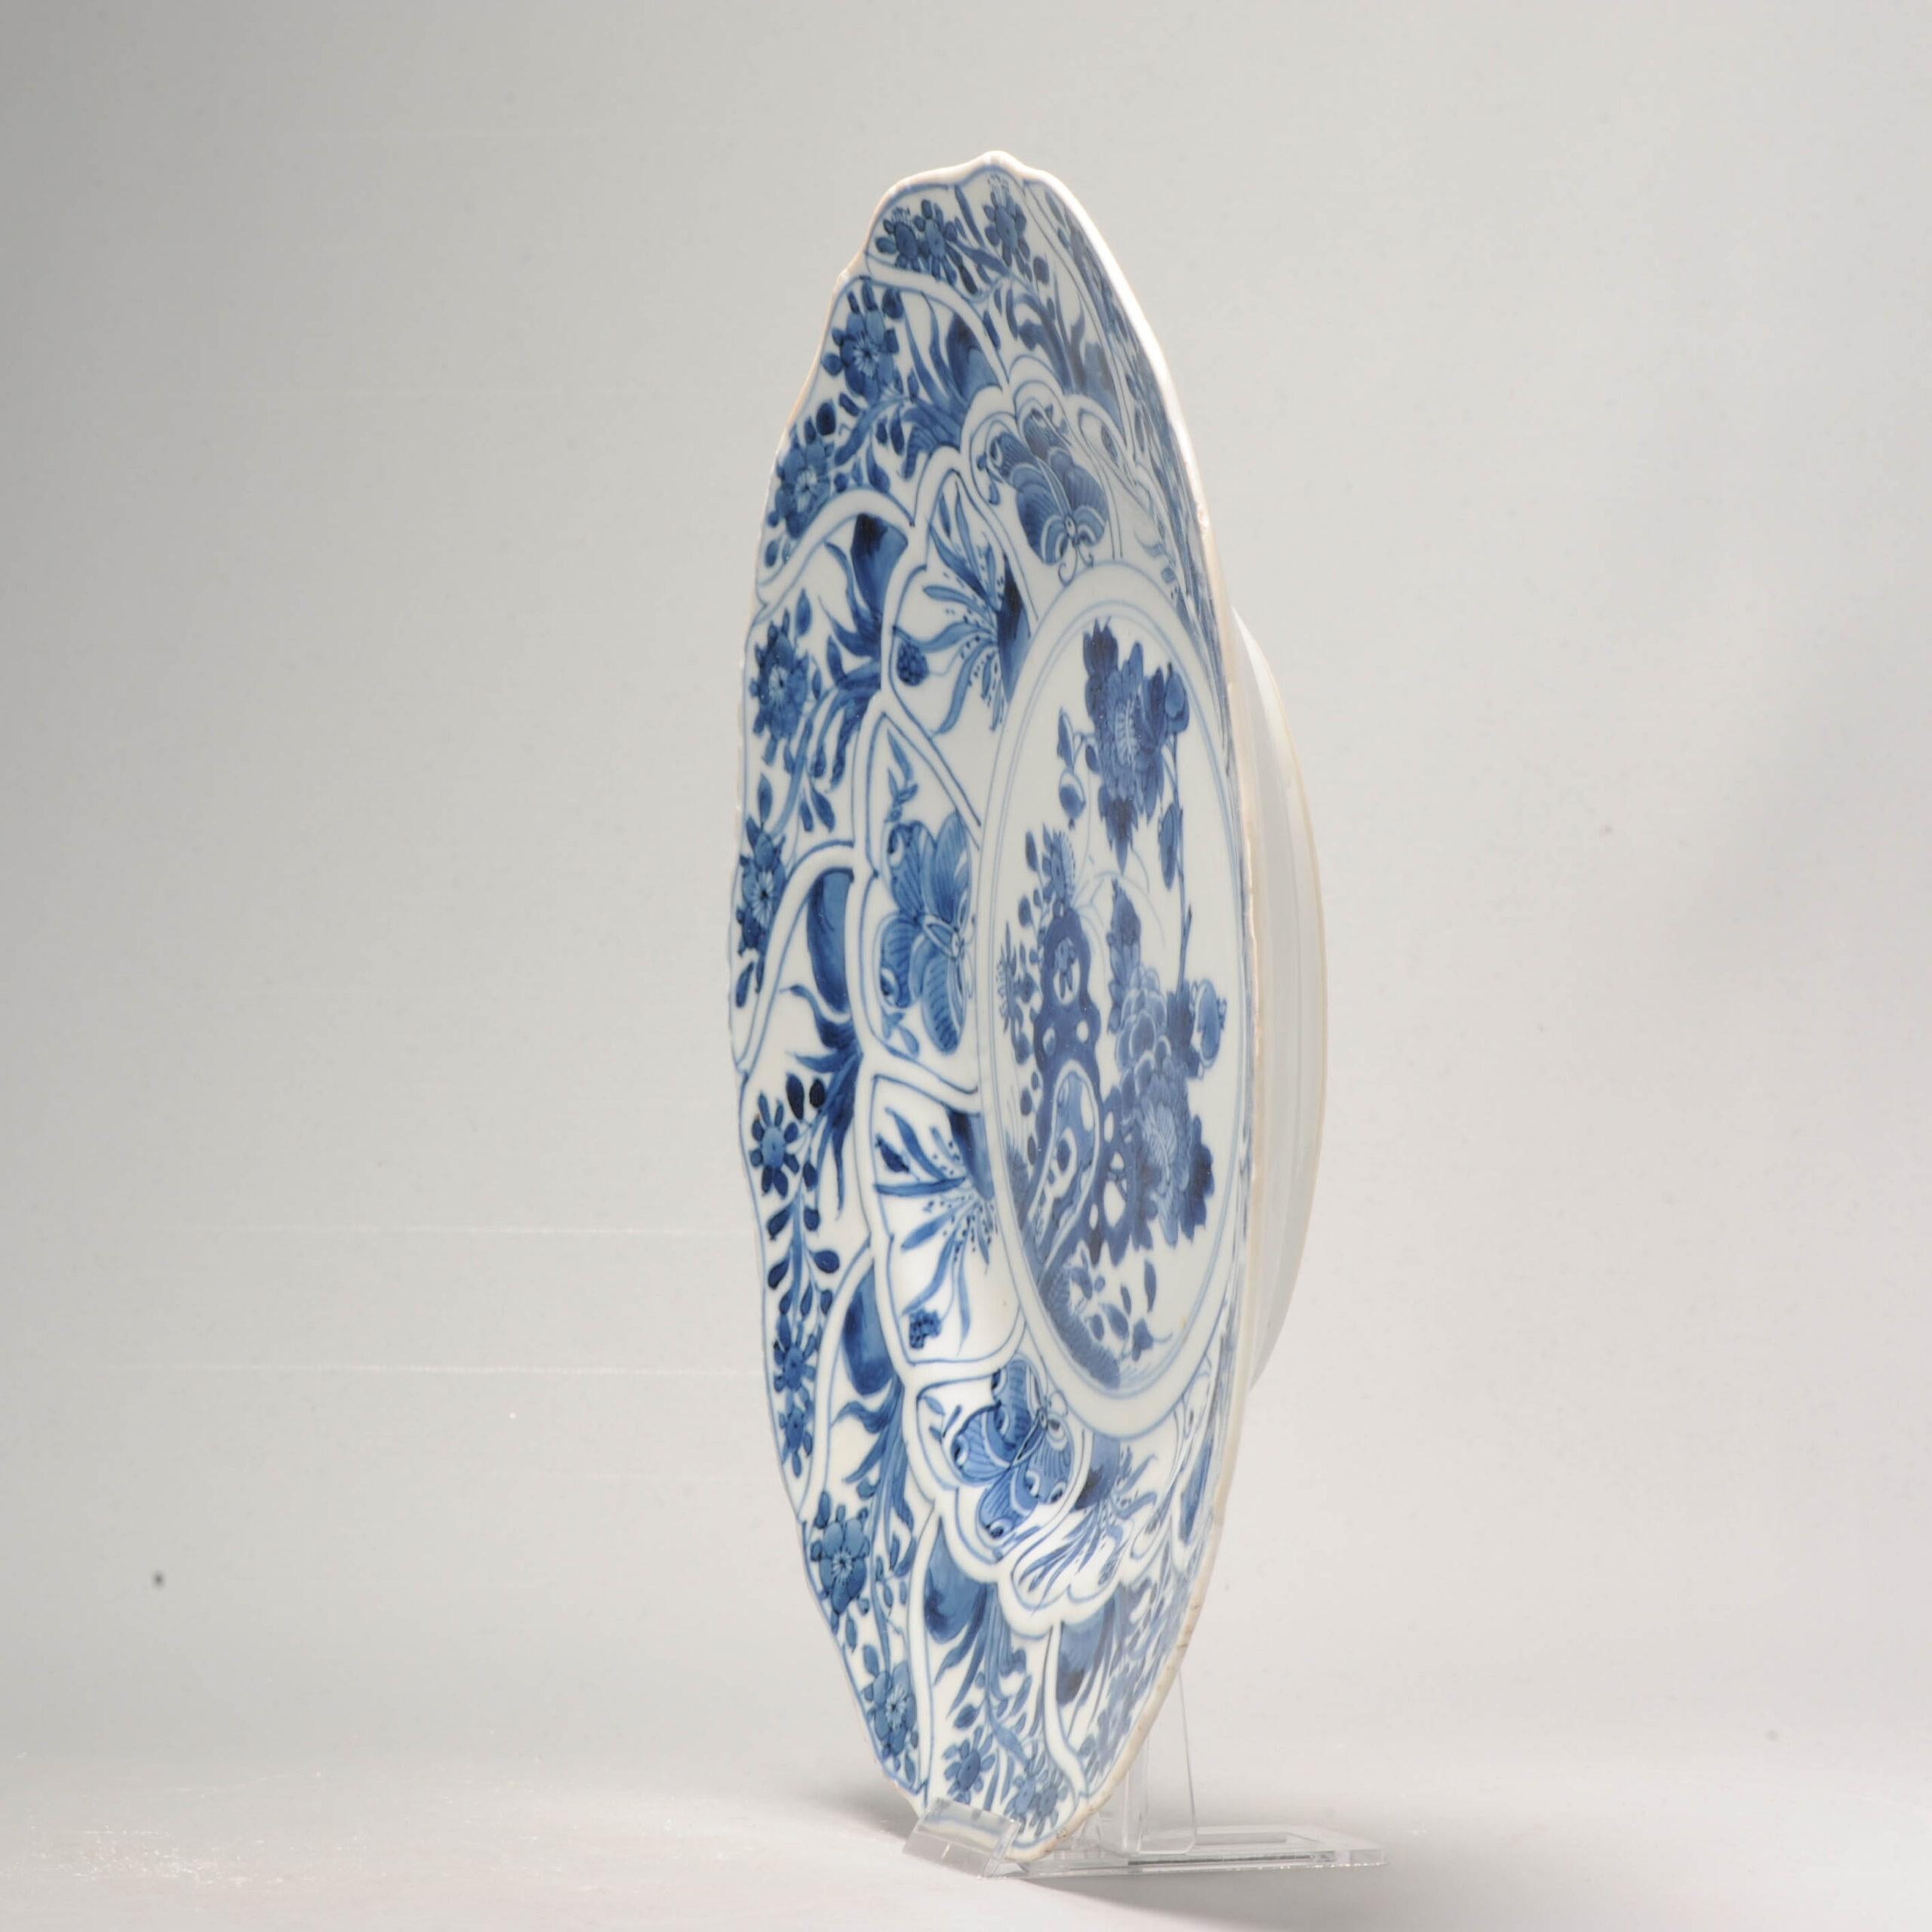 Zum Verkauf steht eine wunderschöne blau-weiße chinesische Schale aus der Kangxi-Periode, die in Form einer Blume geformt ist. Die Schale zeigt eine Szene mit Felsen, Blumen und Schmetterlingen, die kunstvoll in dunklen kobaltblauen Farben gemalt